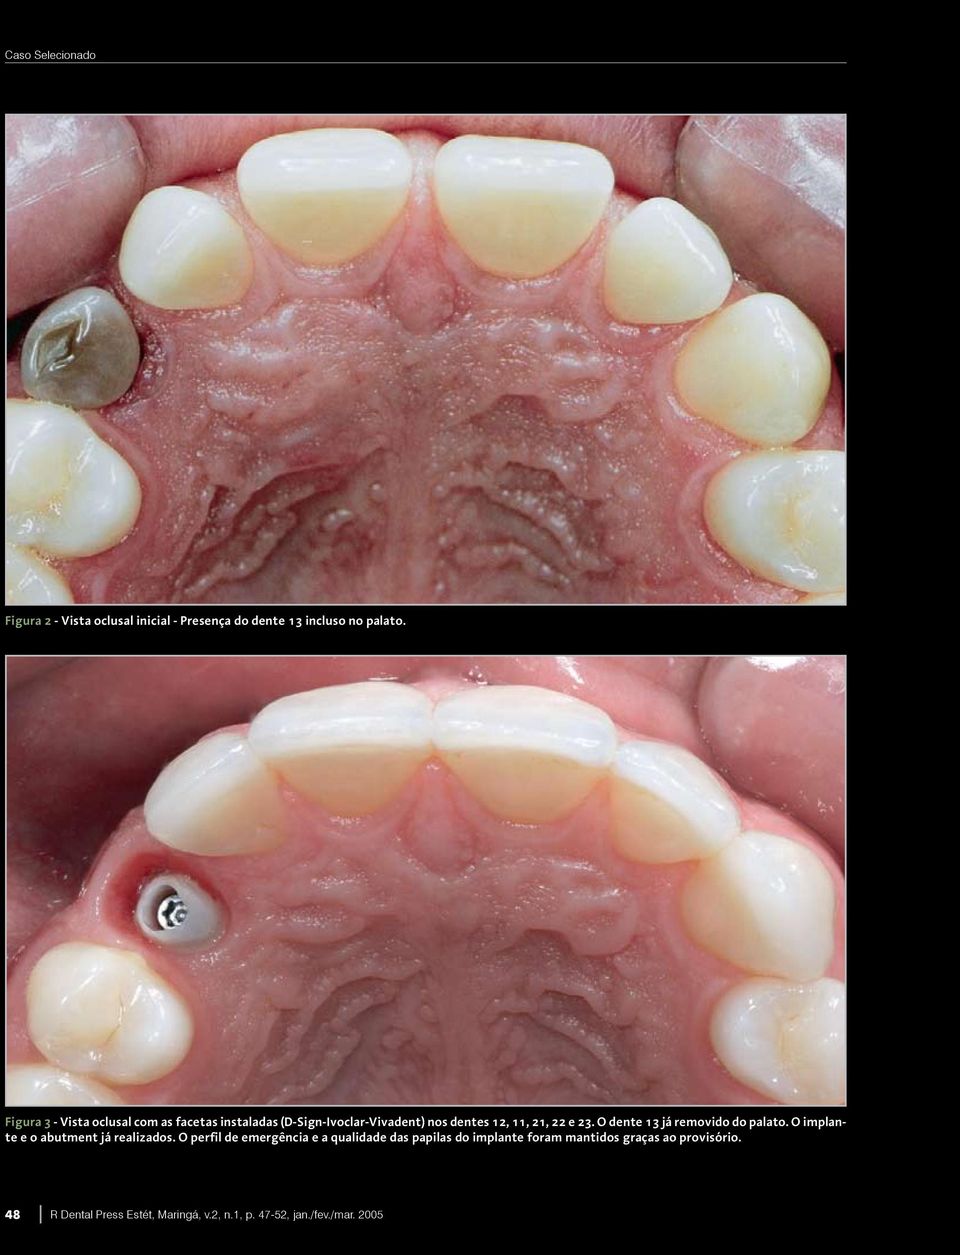 23. O dente 13 já removido do palato. O implante e o abutment já realizados.